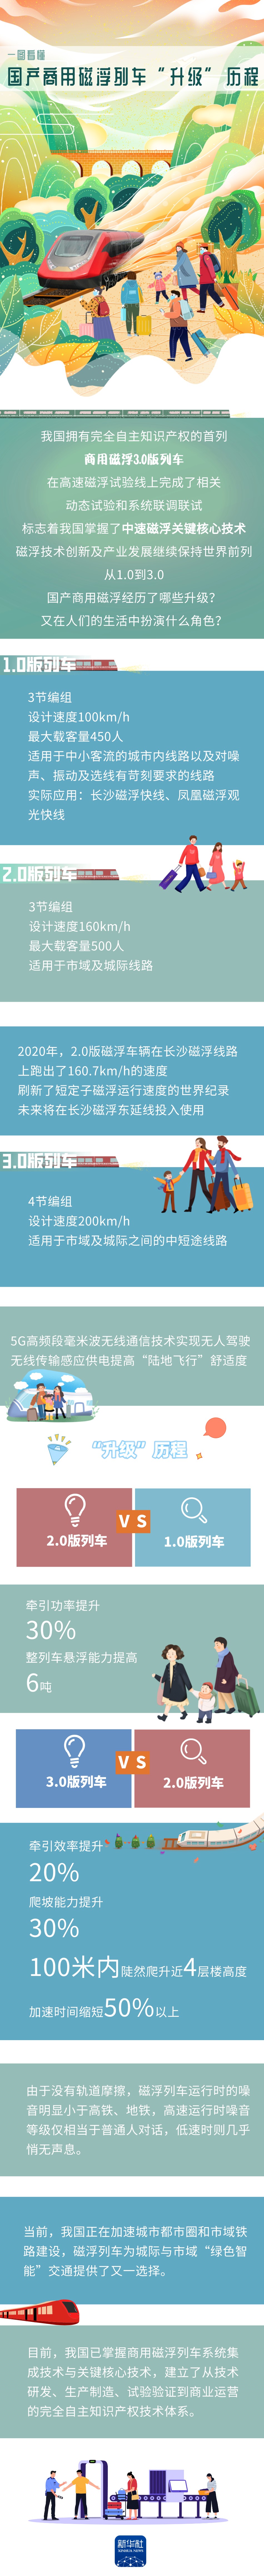 中国自主研制的首列商用磁浮3.0列车完成相关试验